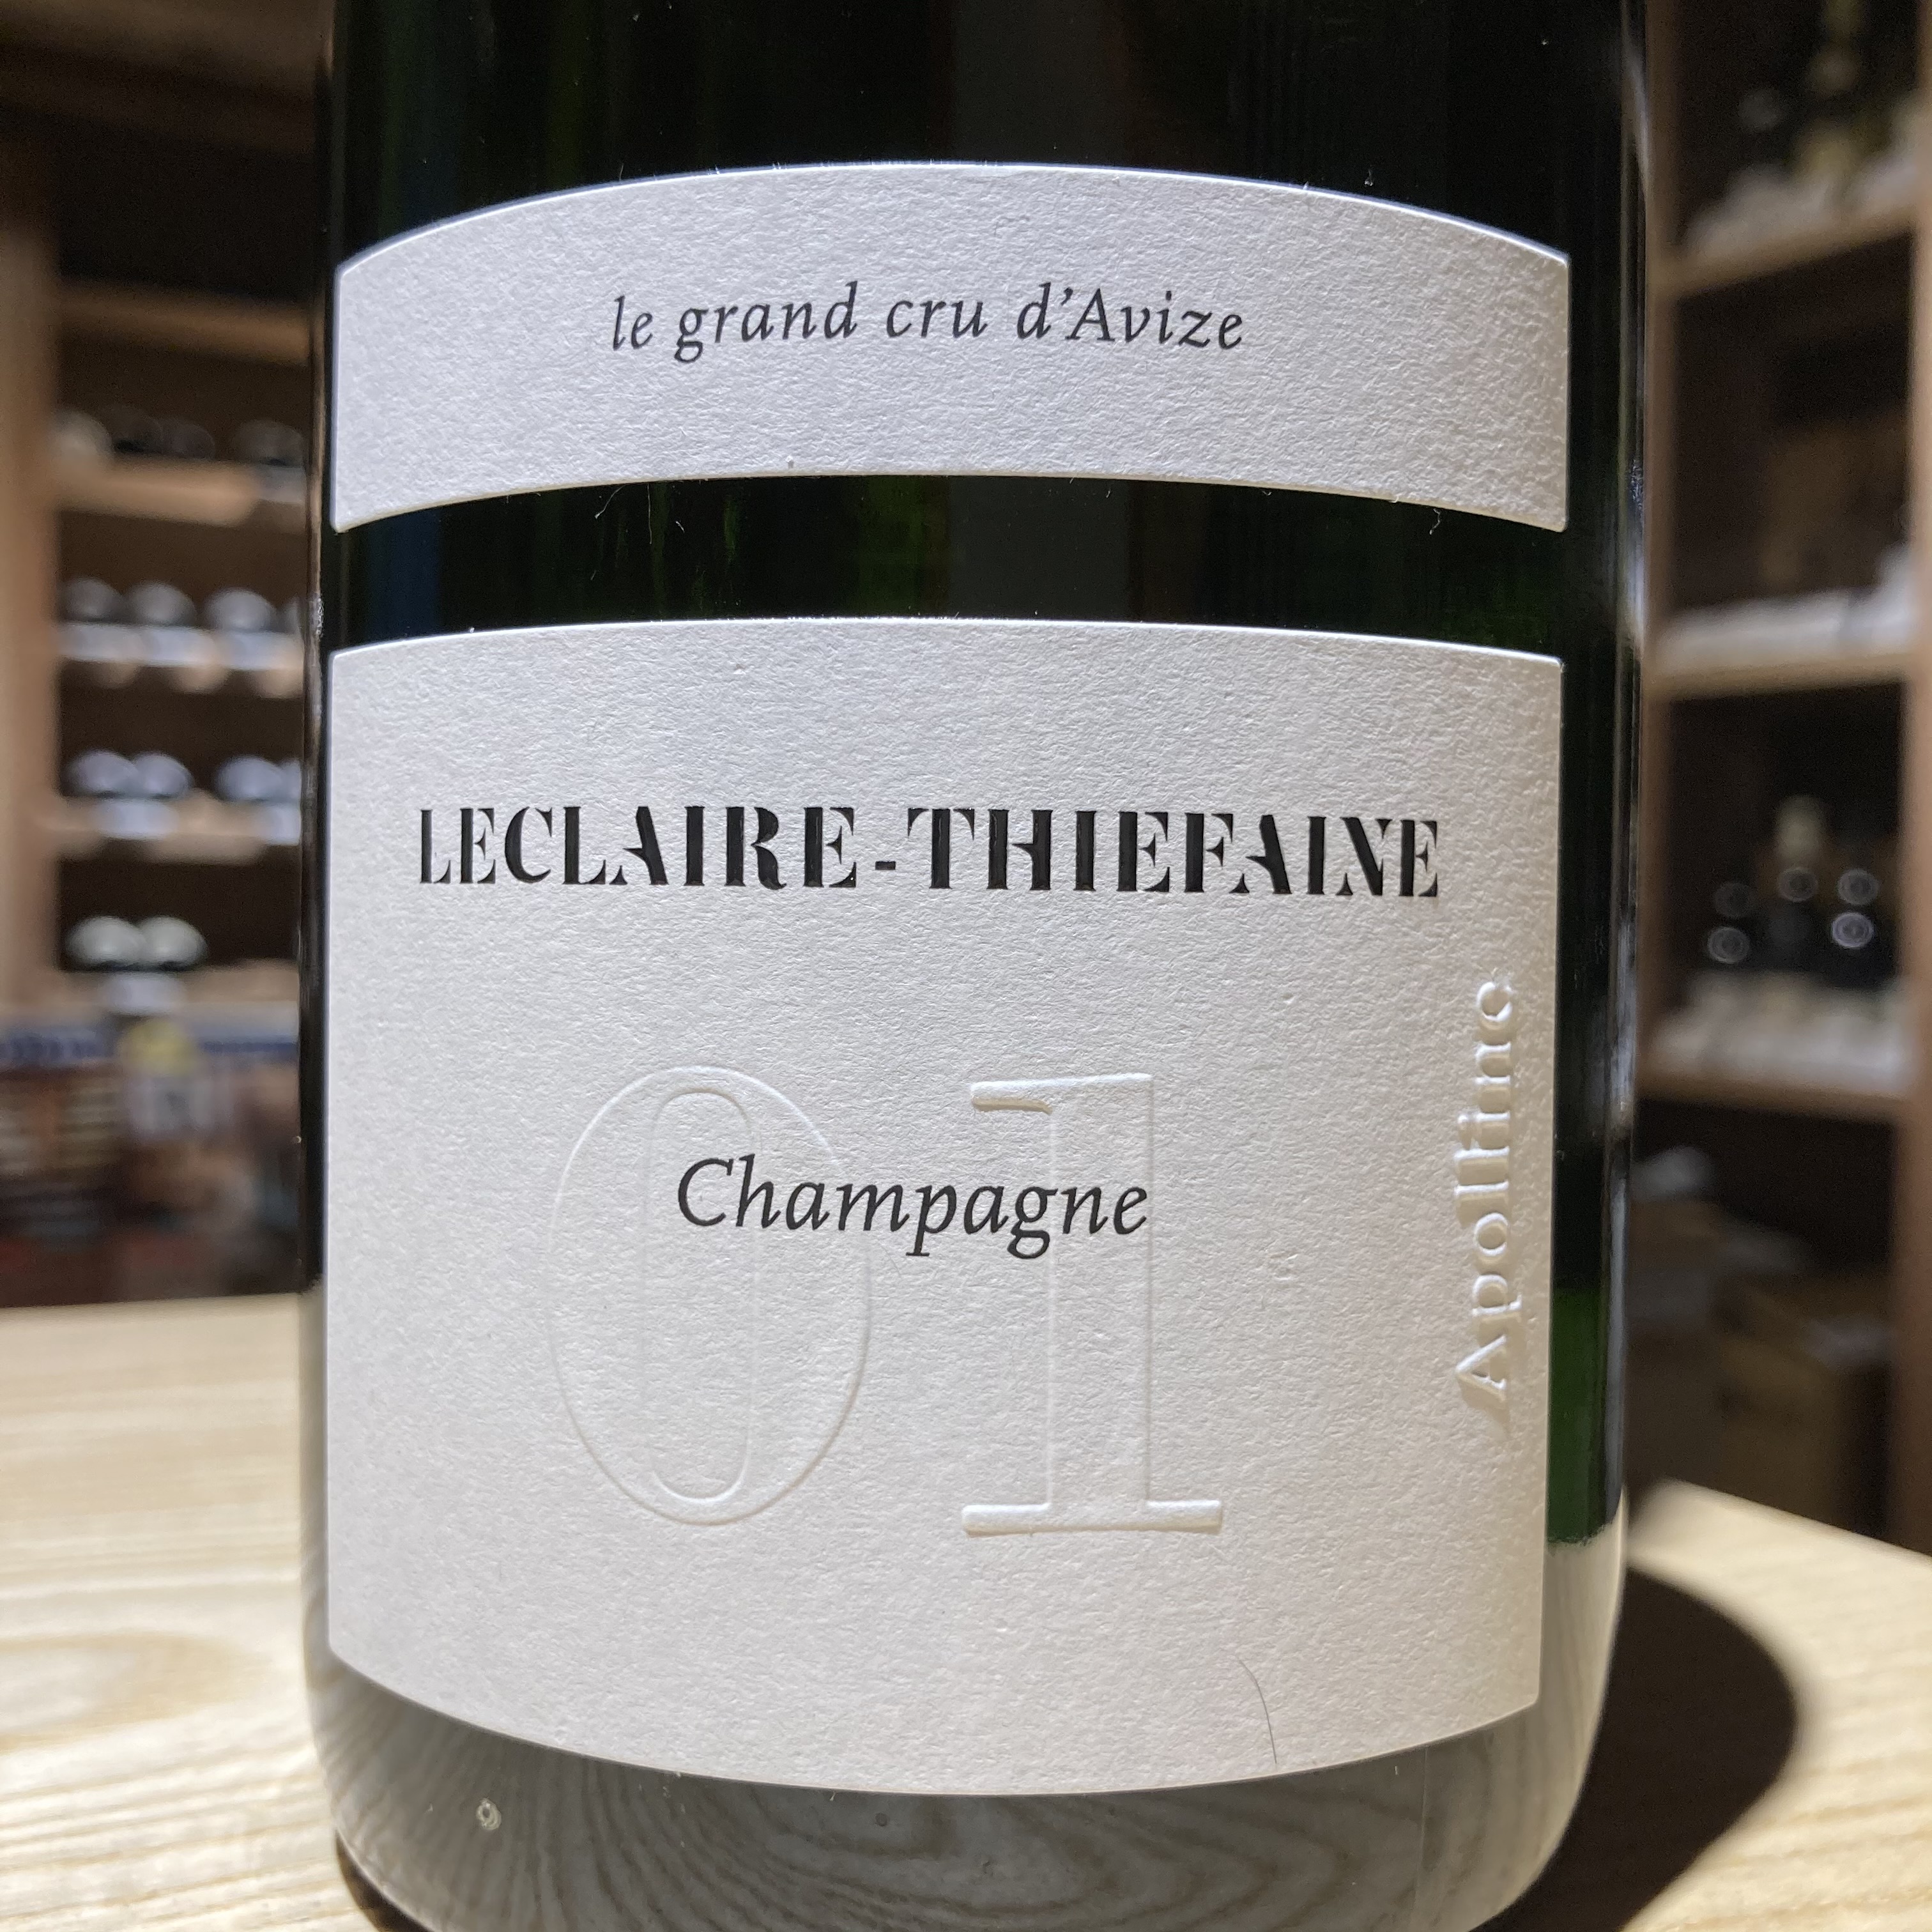 Champagne Leclaire-Thiefaine Cuvée 01 Apolline Grand cru d’Avize Brut NV